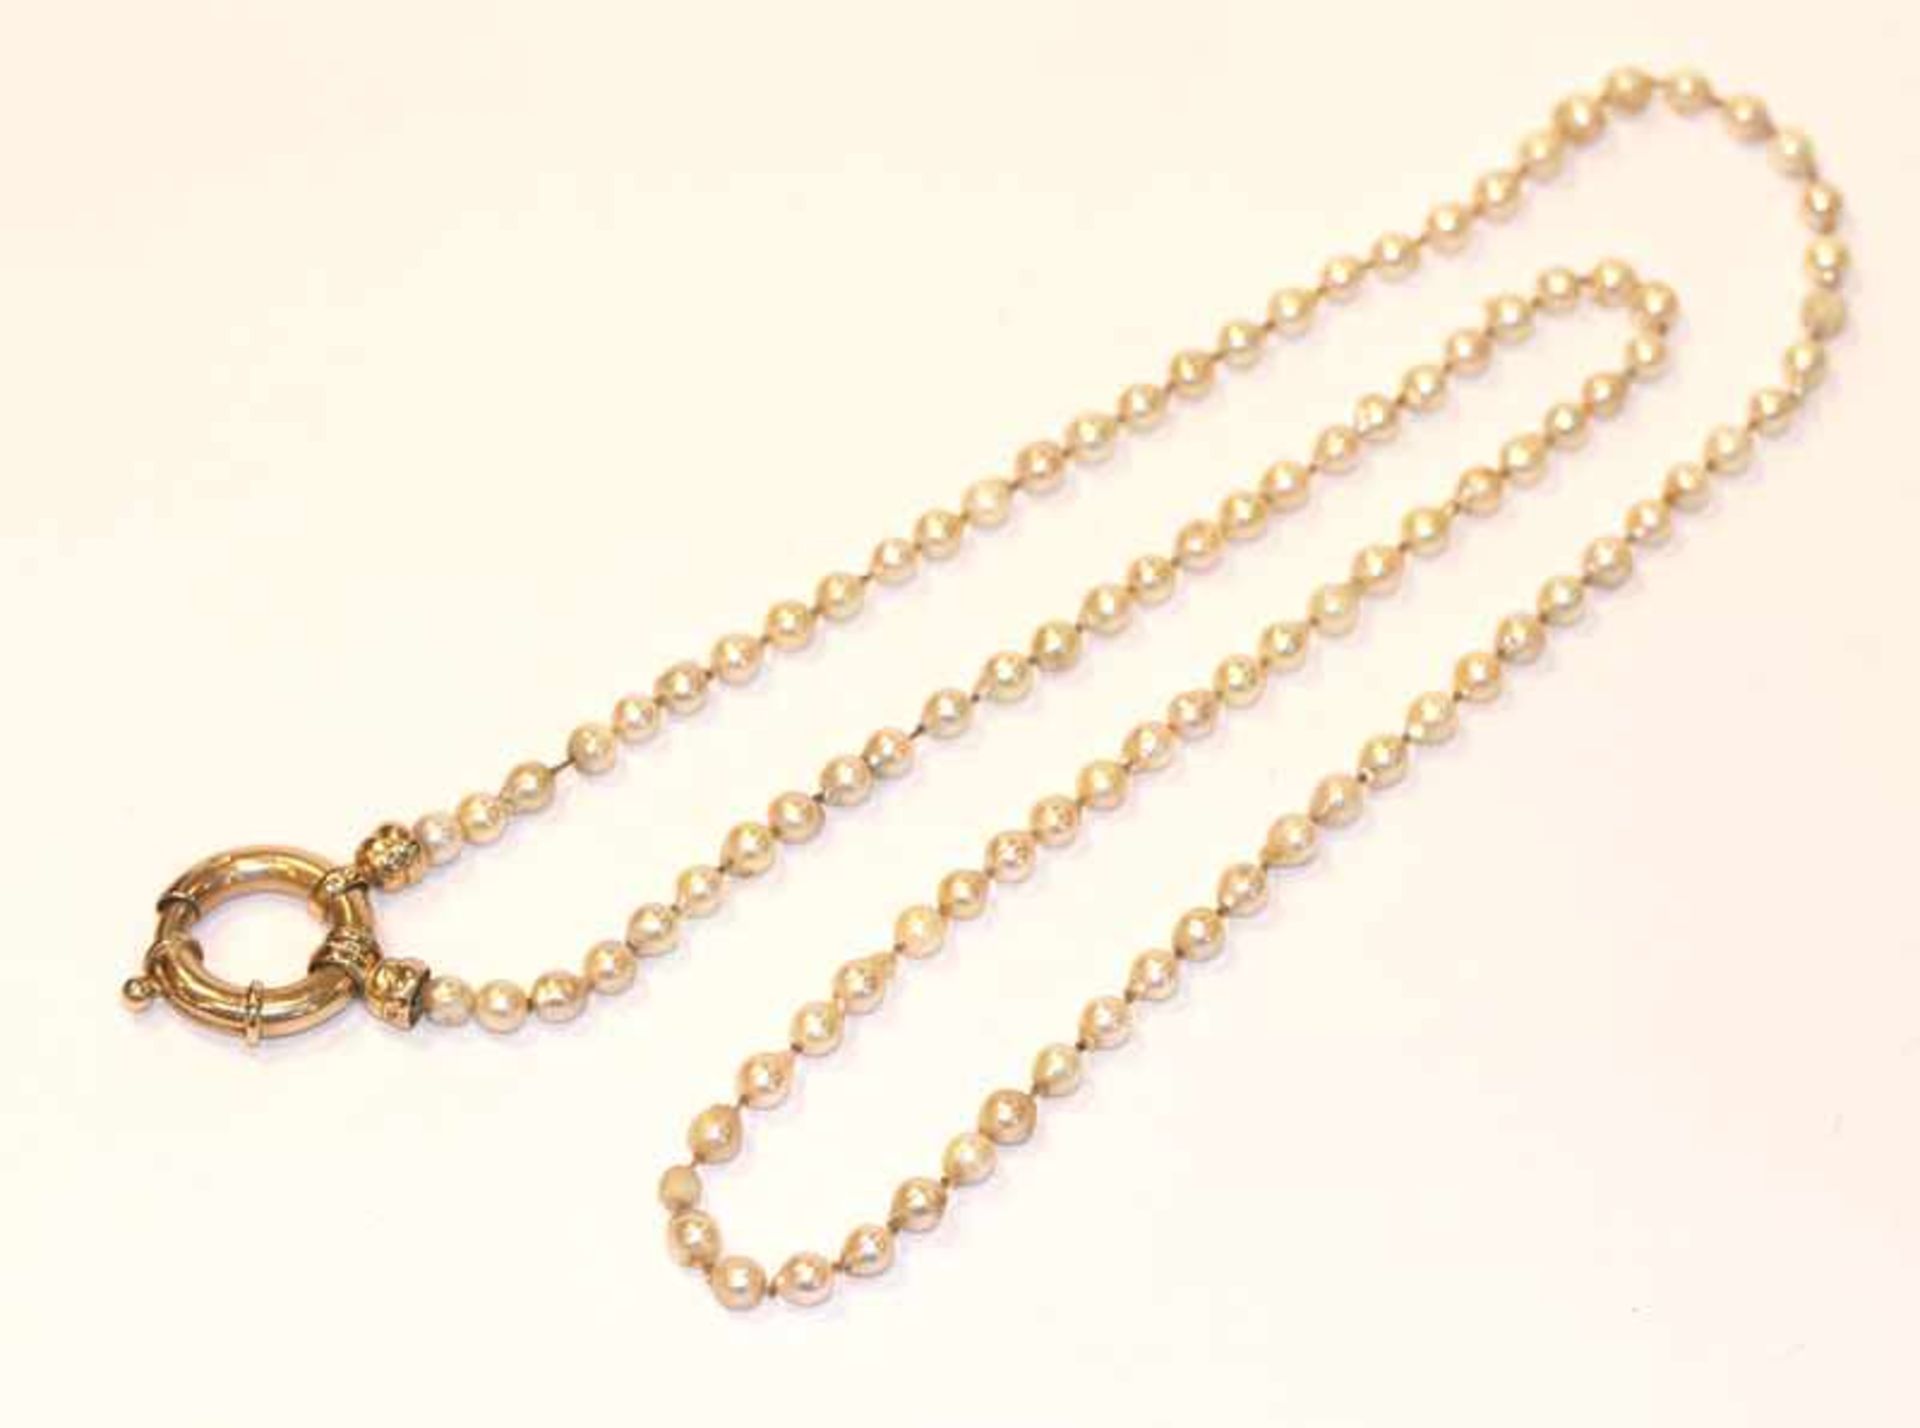 Perlenkette mit 14 k Gelbgold Ringverschluß. L 85 cm, Perlen teils beschädigt/blind, Knotung locker